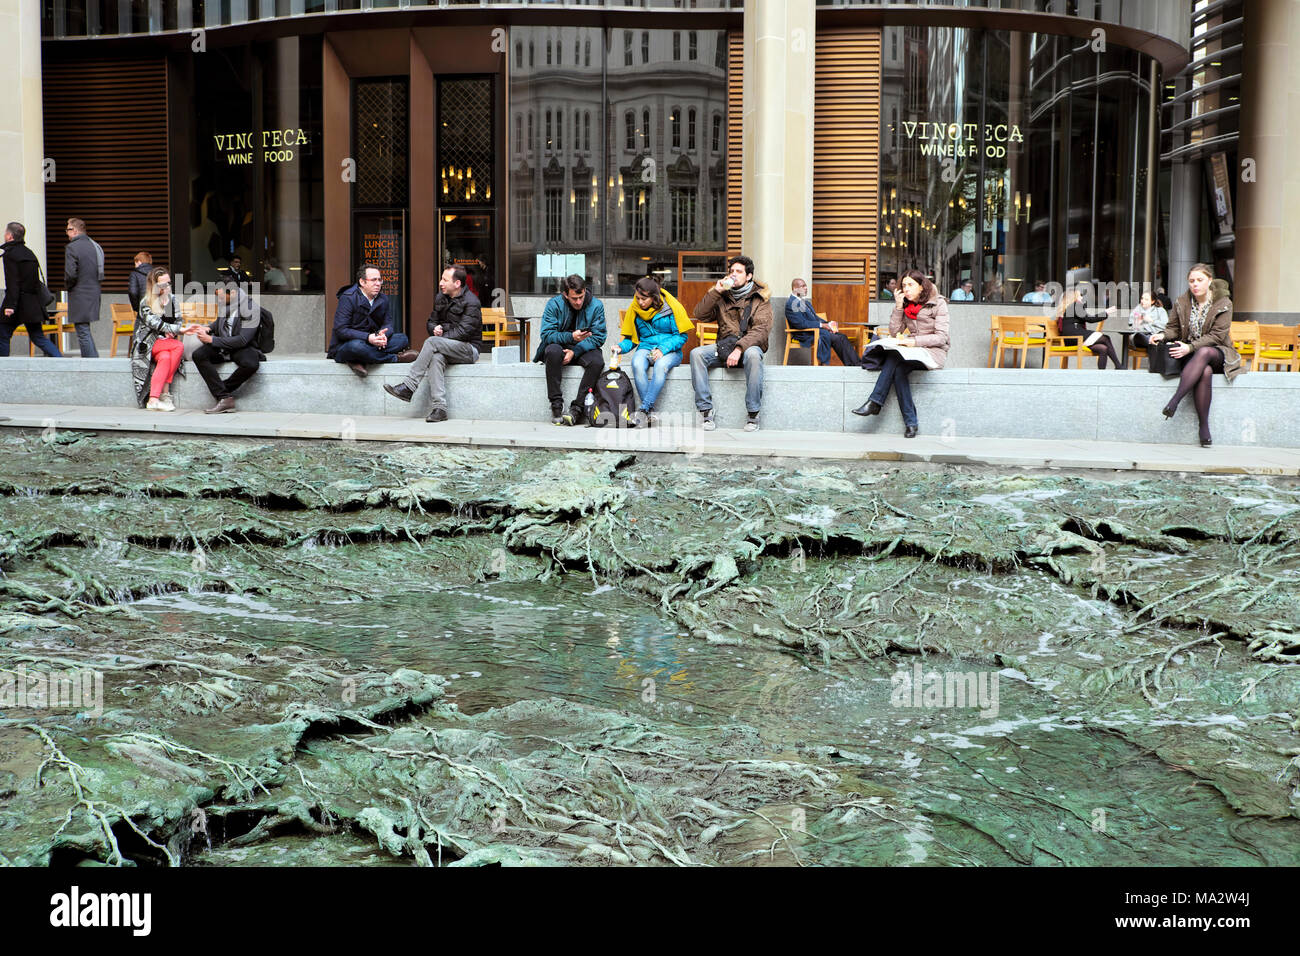 'Oublié' d'eau sculpture de l'artiste Cristina Iglesias au bâtiment du siège européen de Bloomberg dans la ville de London UK KATHY DEWITT Banque D'Images